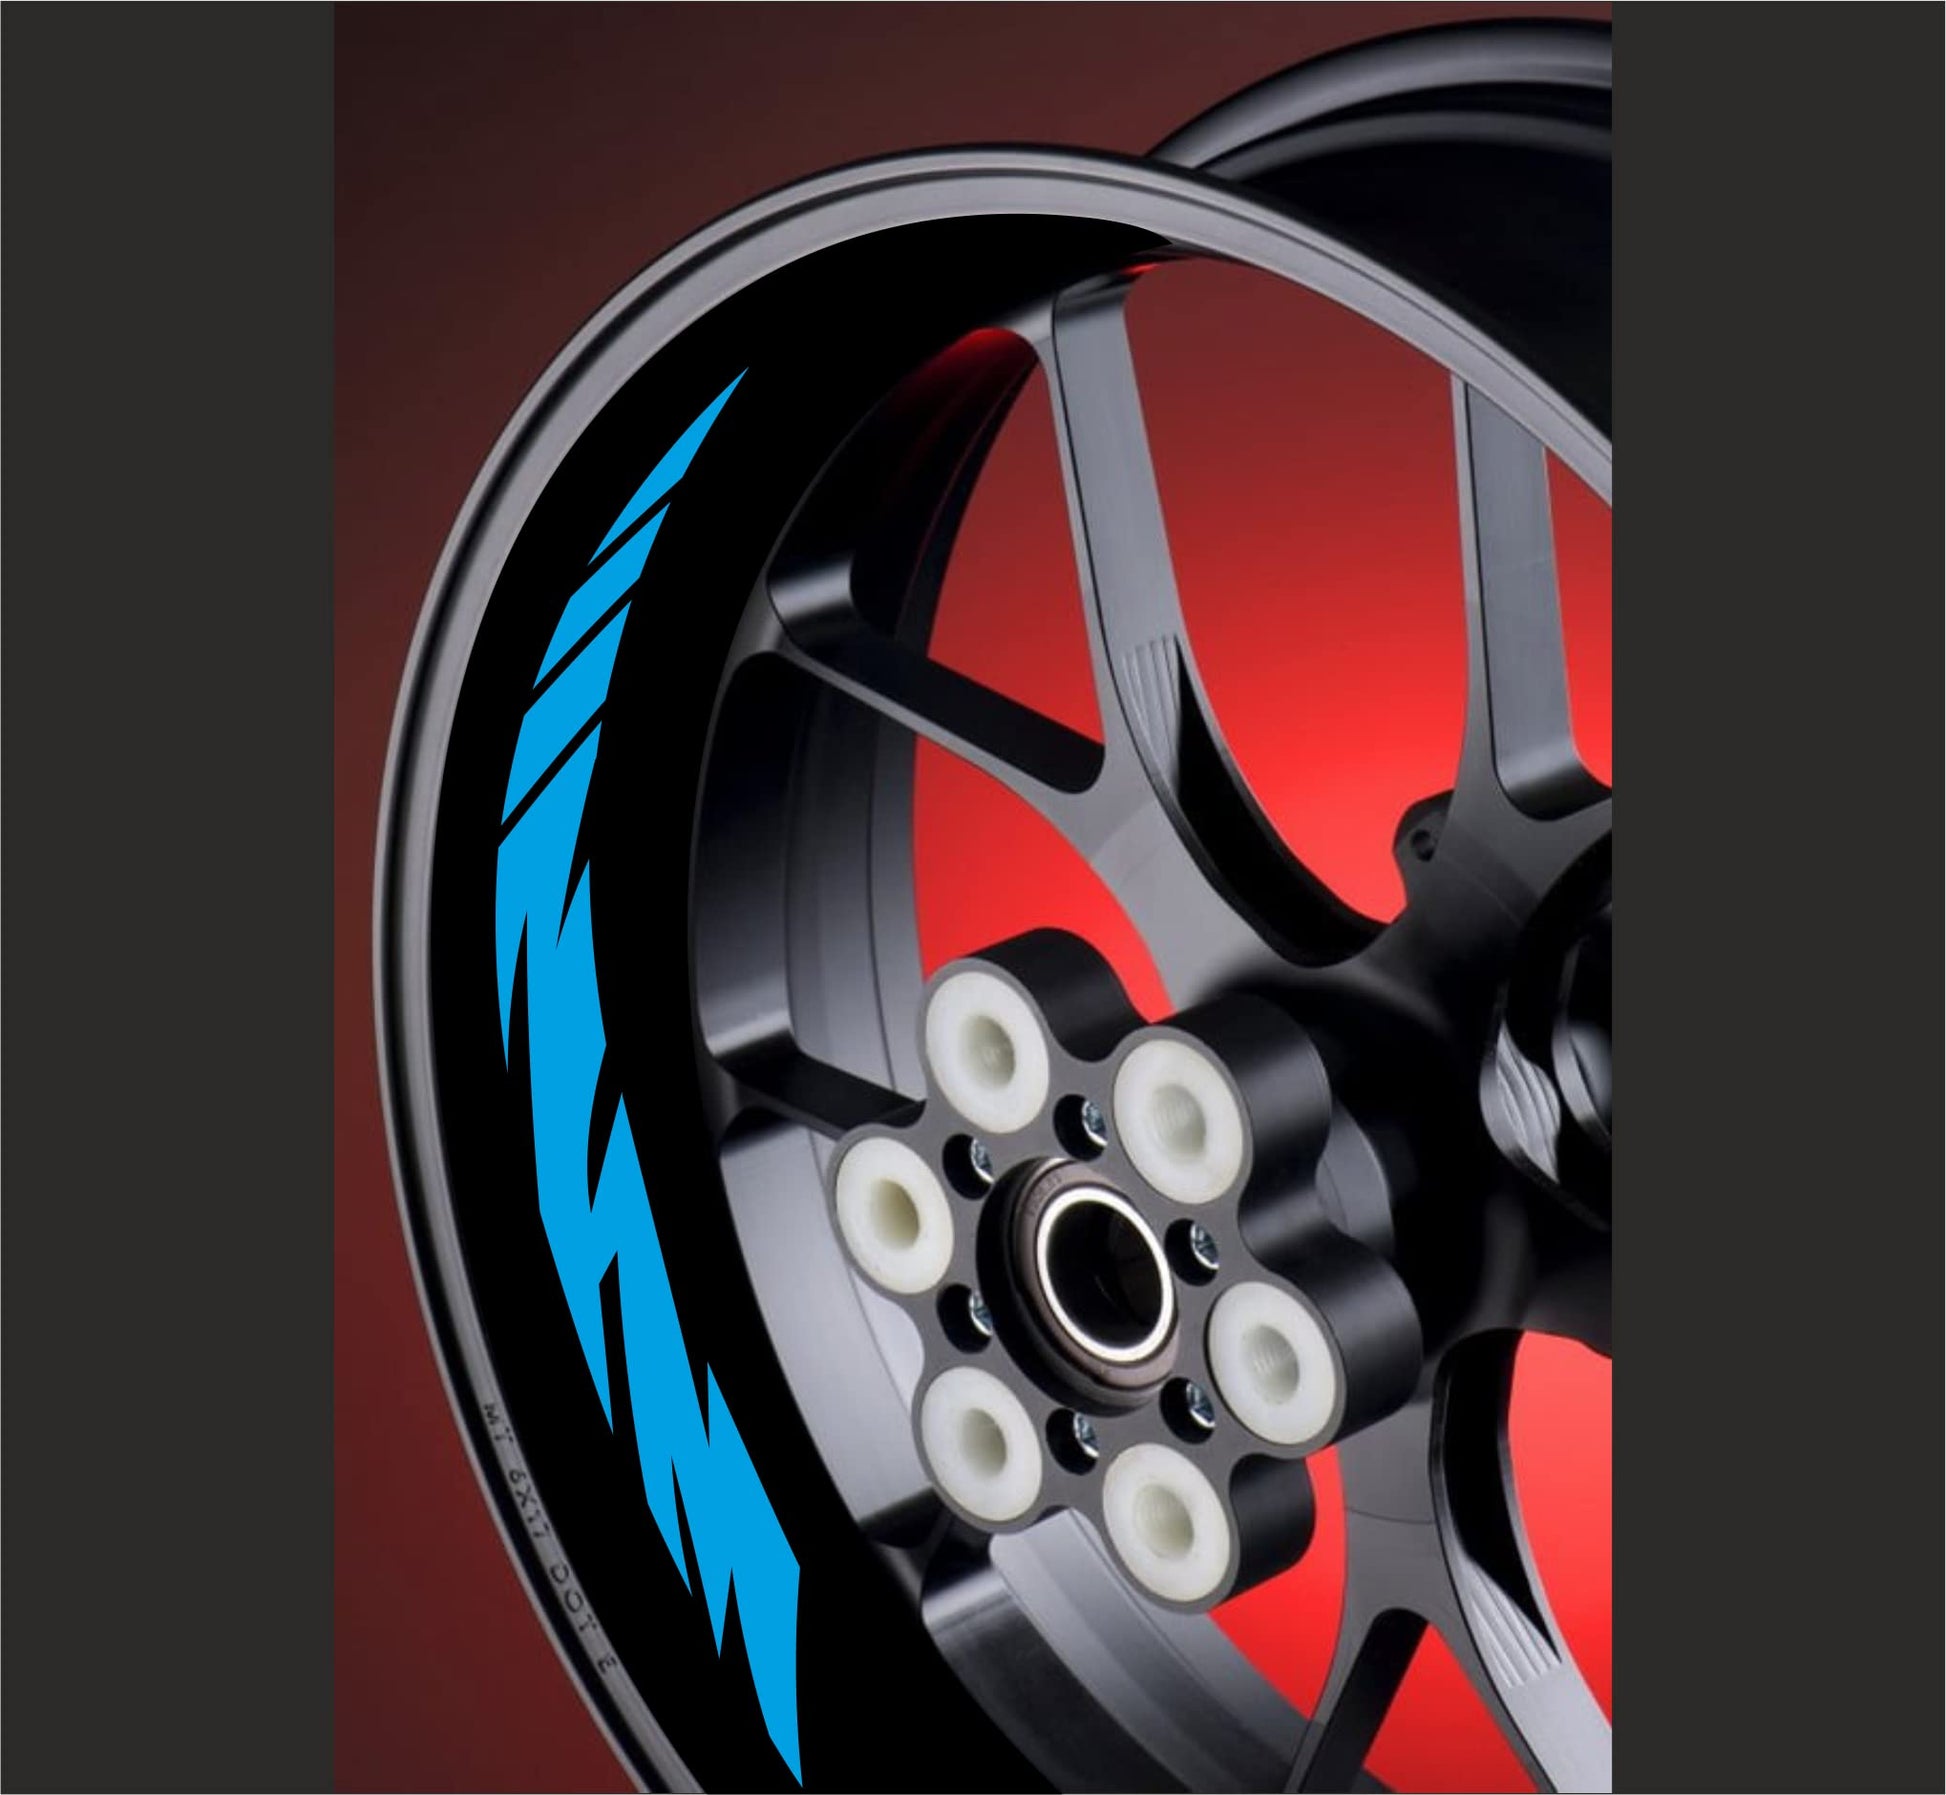 DualColorStampe Adesivi interno cerchi moto 17 POLLICI Compatibili con Ducati Suzuki Kawasaki Honda Triumph cerchi cerchioni gomme strisce COD.D0032 a €9.99 solo da DualColorStampe